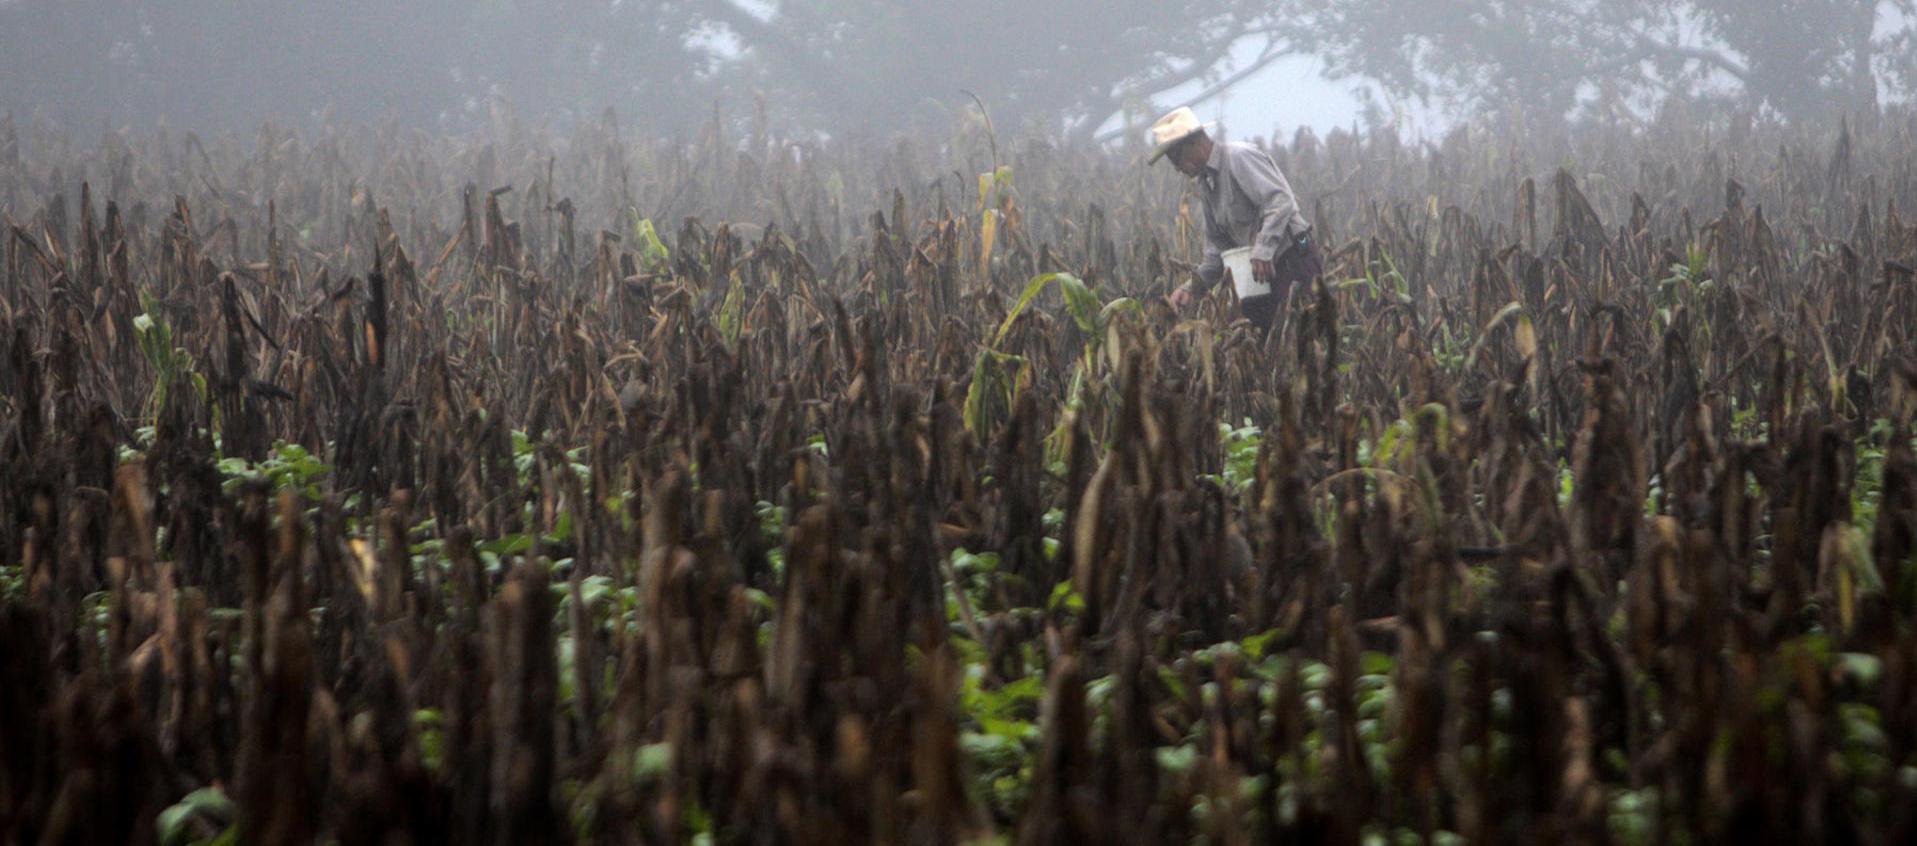  Fotografía de archivo que muestra a un campesino caminando en una plantación seca de maíz de Centroamérica, a consecuencia de 'El Niño'.